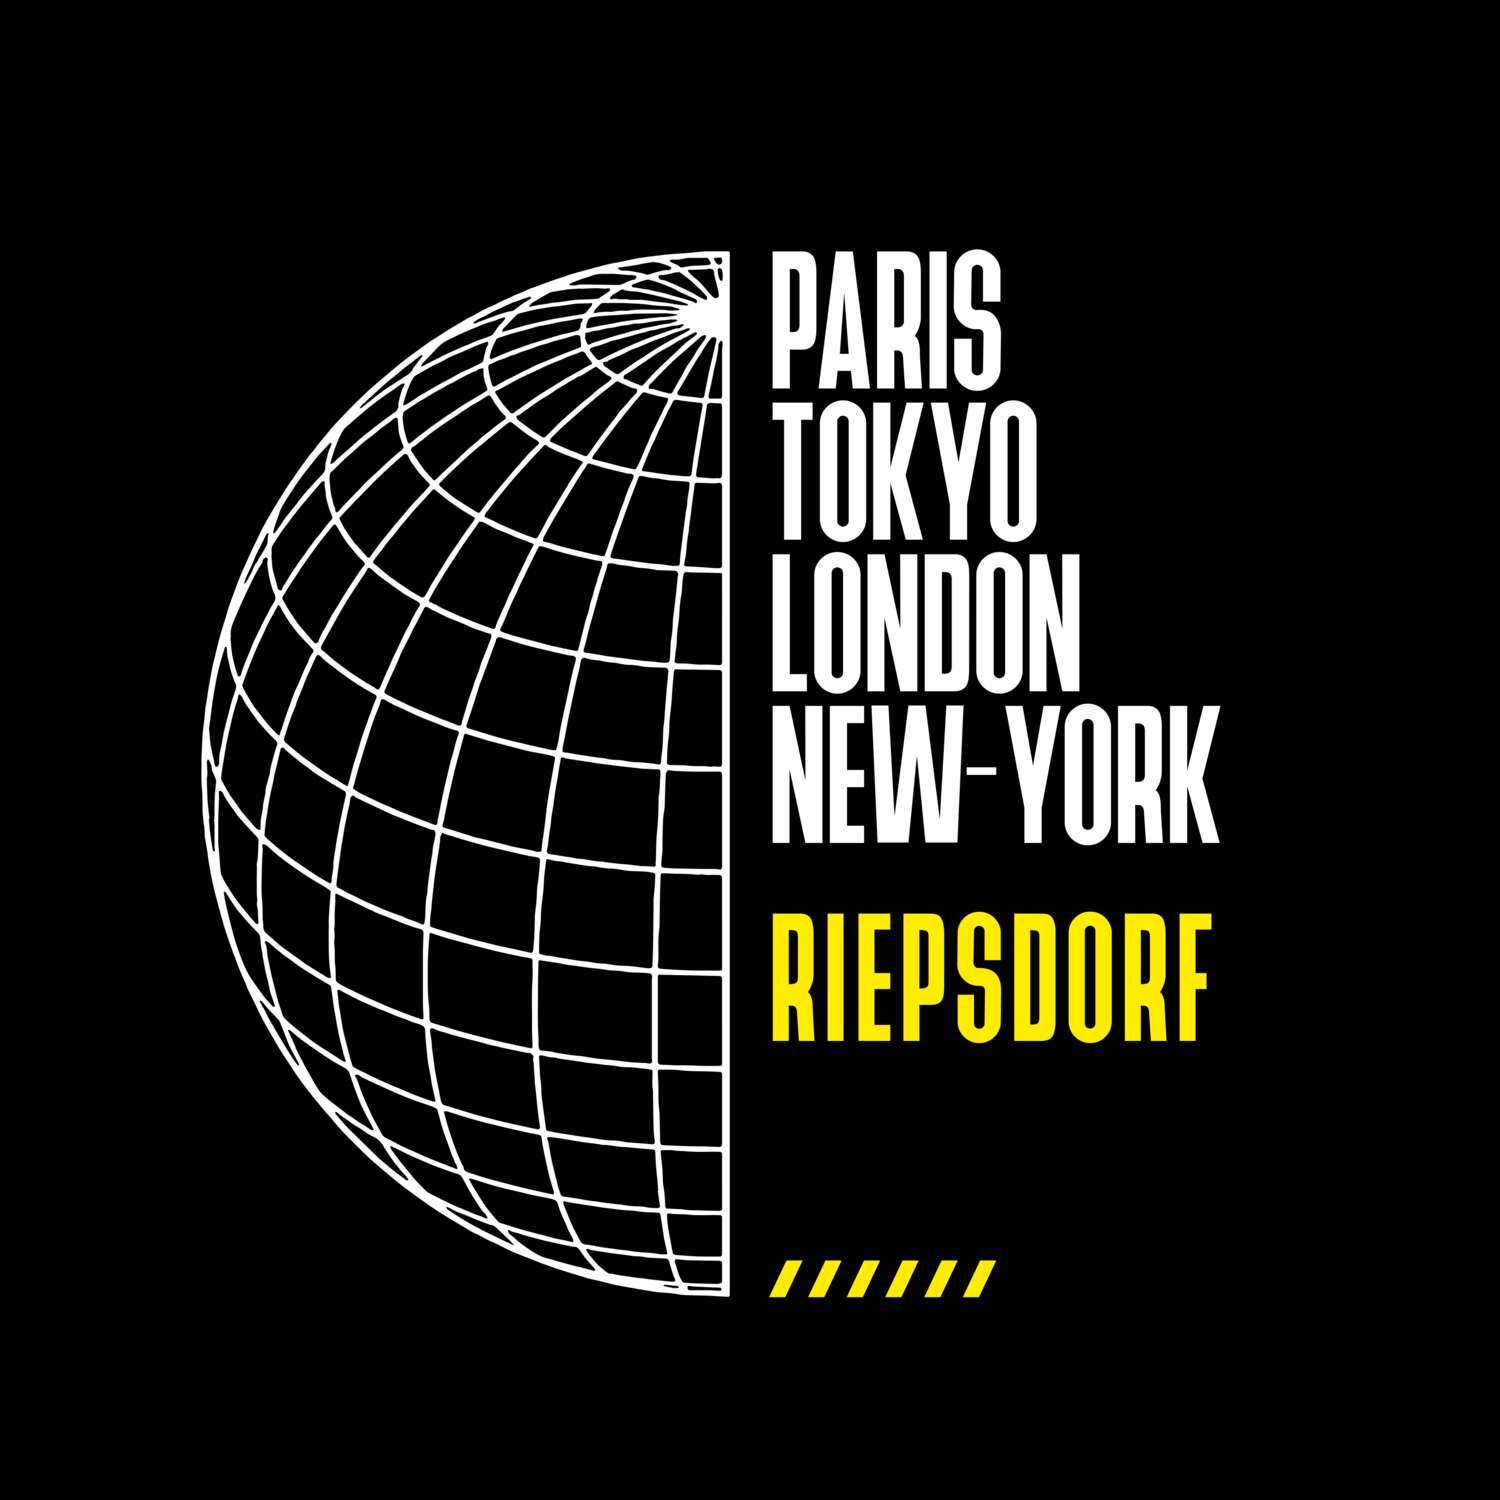 Riepsdorf T-Shirt »Paris Tokyo London«